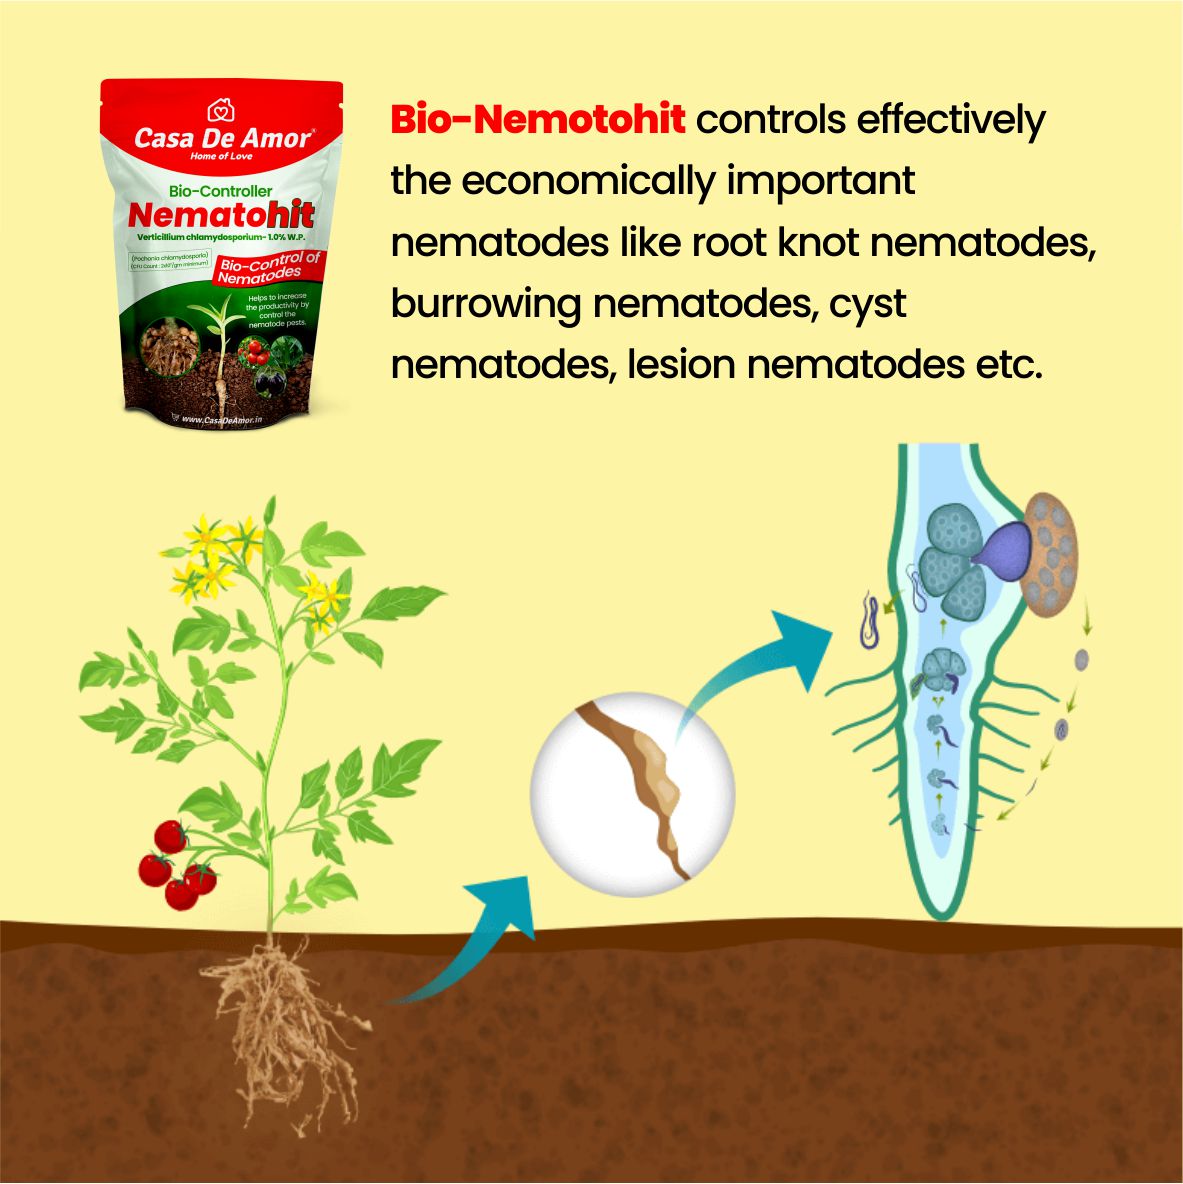 Casa De Amor Nematohit Verticillium chlamydosporium- 1.0% W.P., Nematodes Bio-Controller for Root Knot, Burrowing, Cyst & Lesion Nematodes